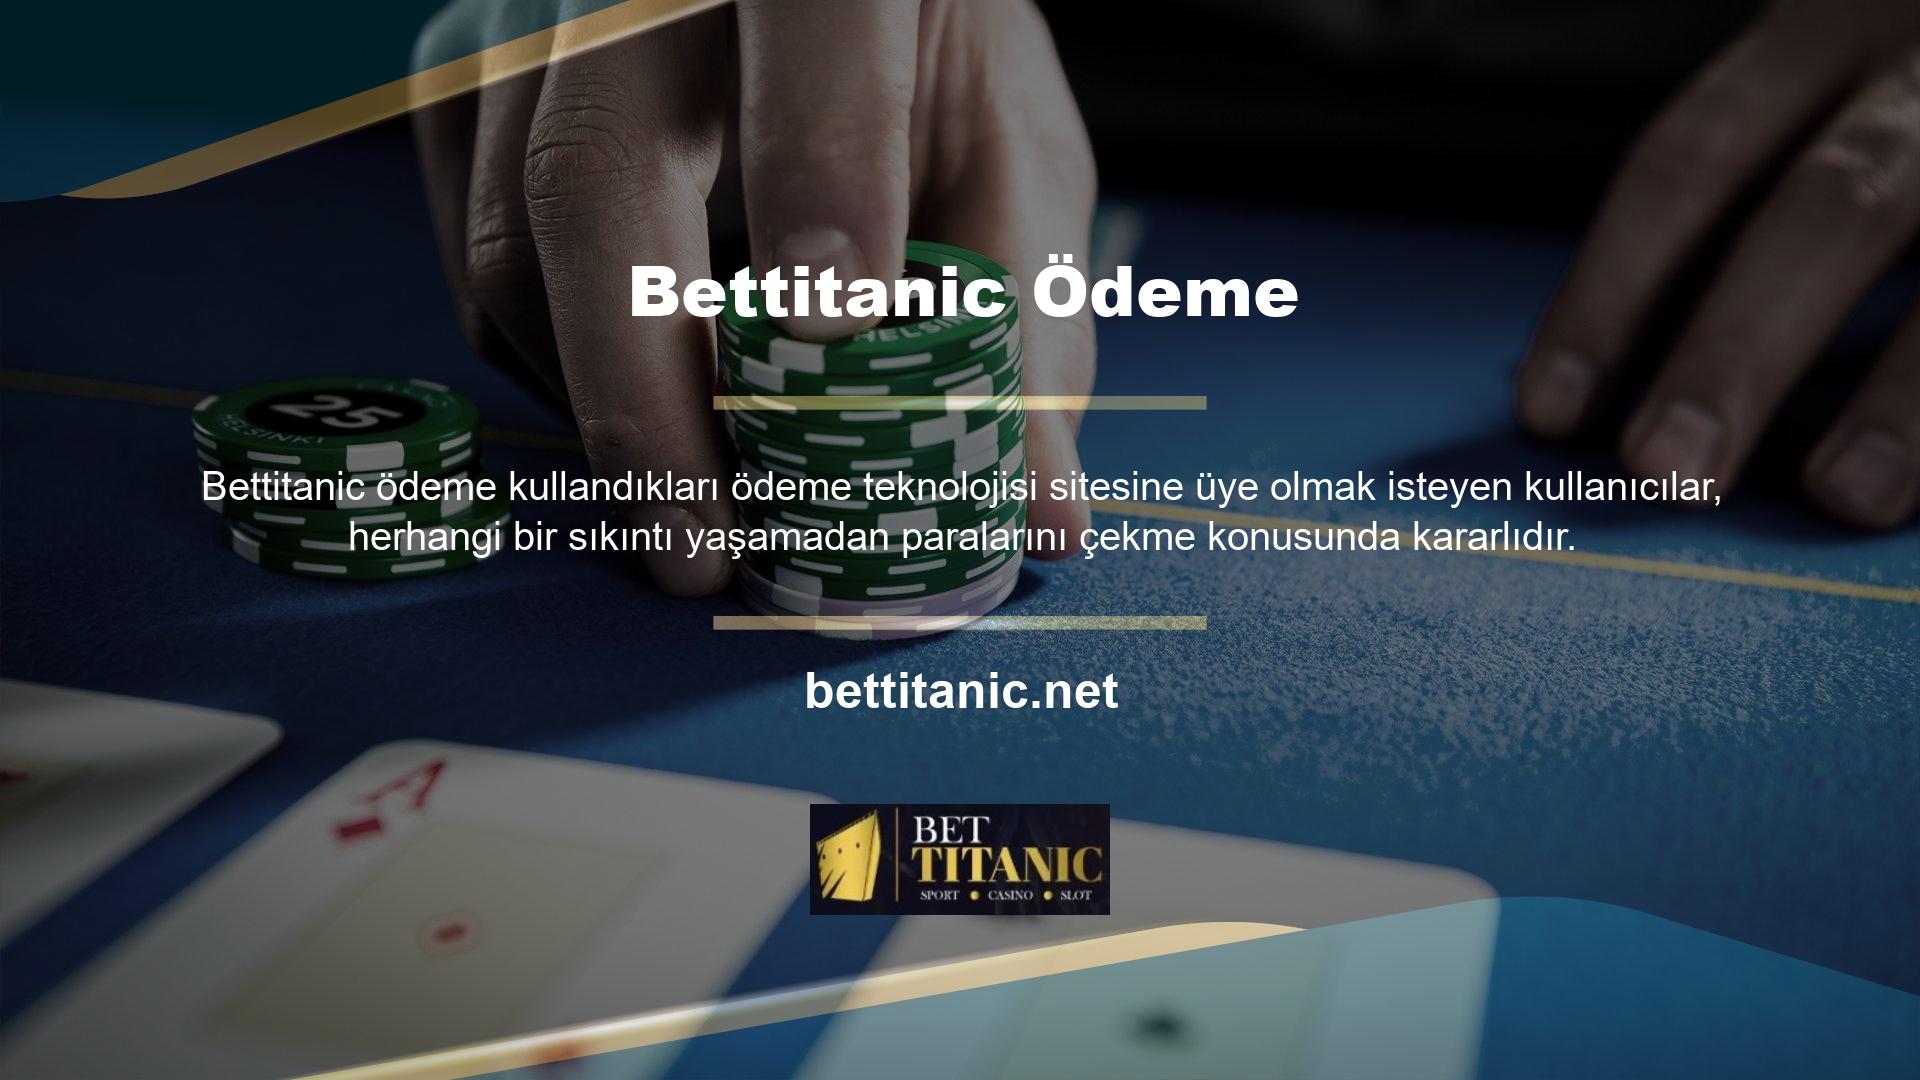 Bettitanic, bonuslar ve bol miktarda oyun içeriği sunması nedeniyle para kazanmak için iyi bir sitedir ve çeşitli ödeme teknolojilerini kullanarak hızlı kazanç ve anında para çekme olanağı sağlayan bir platformdur